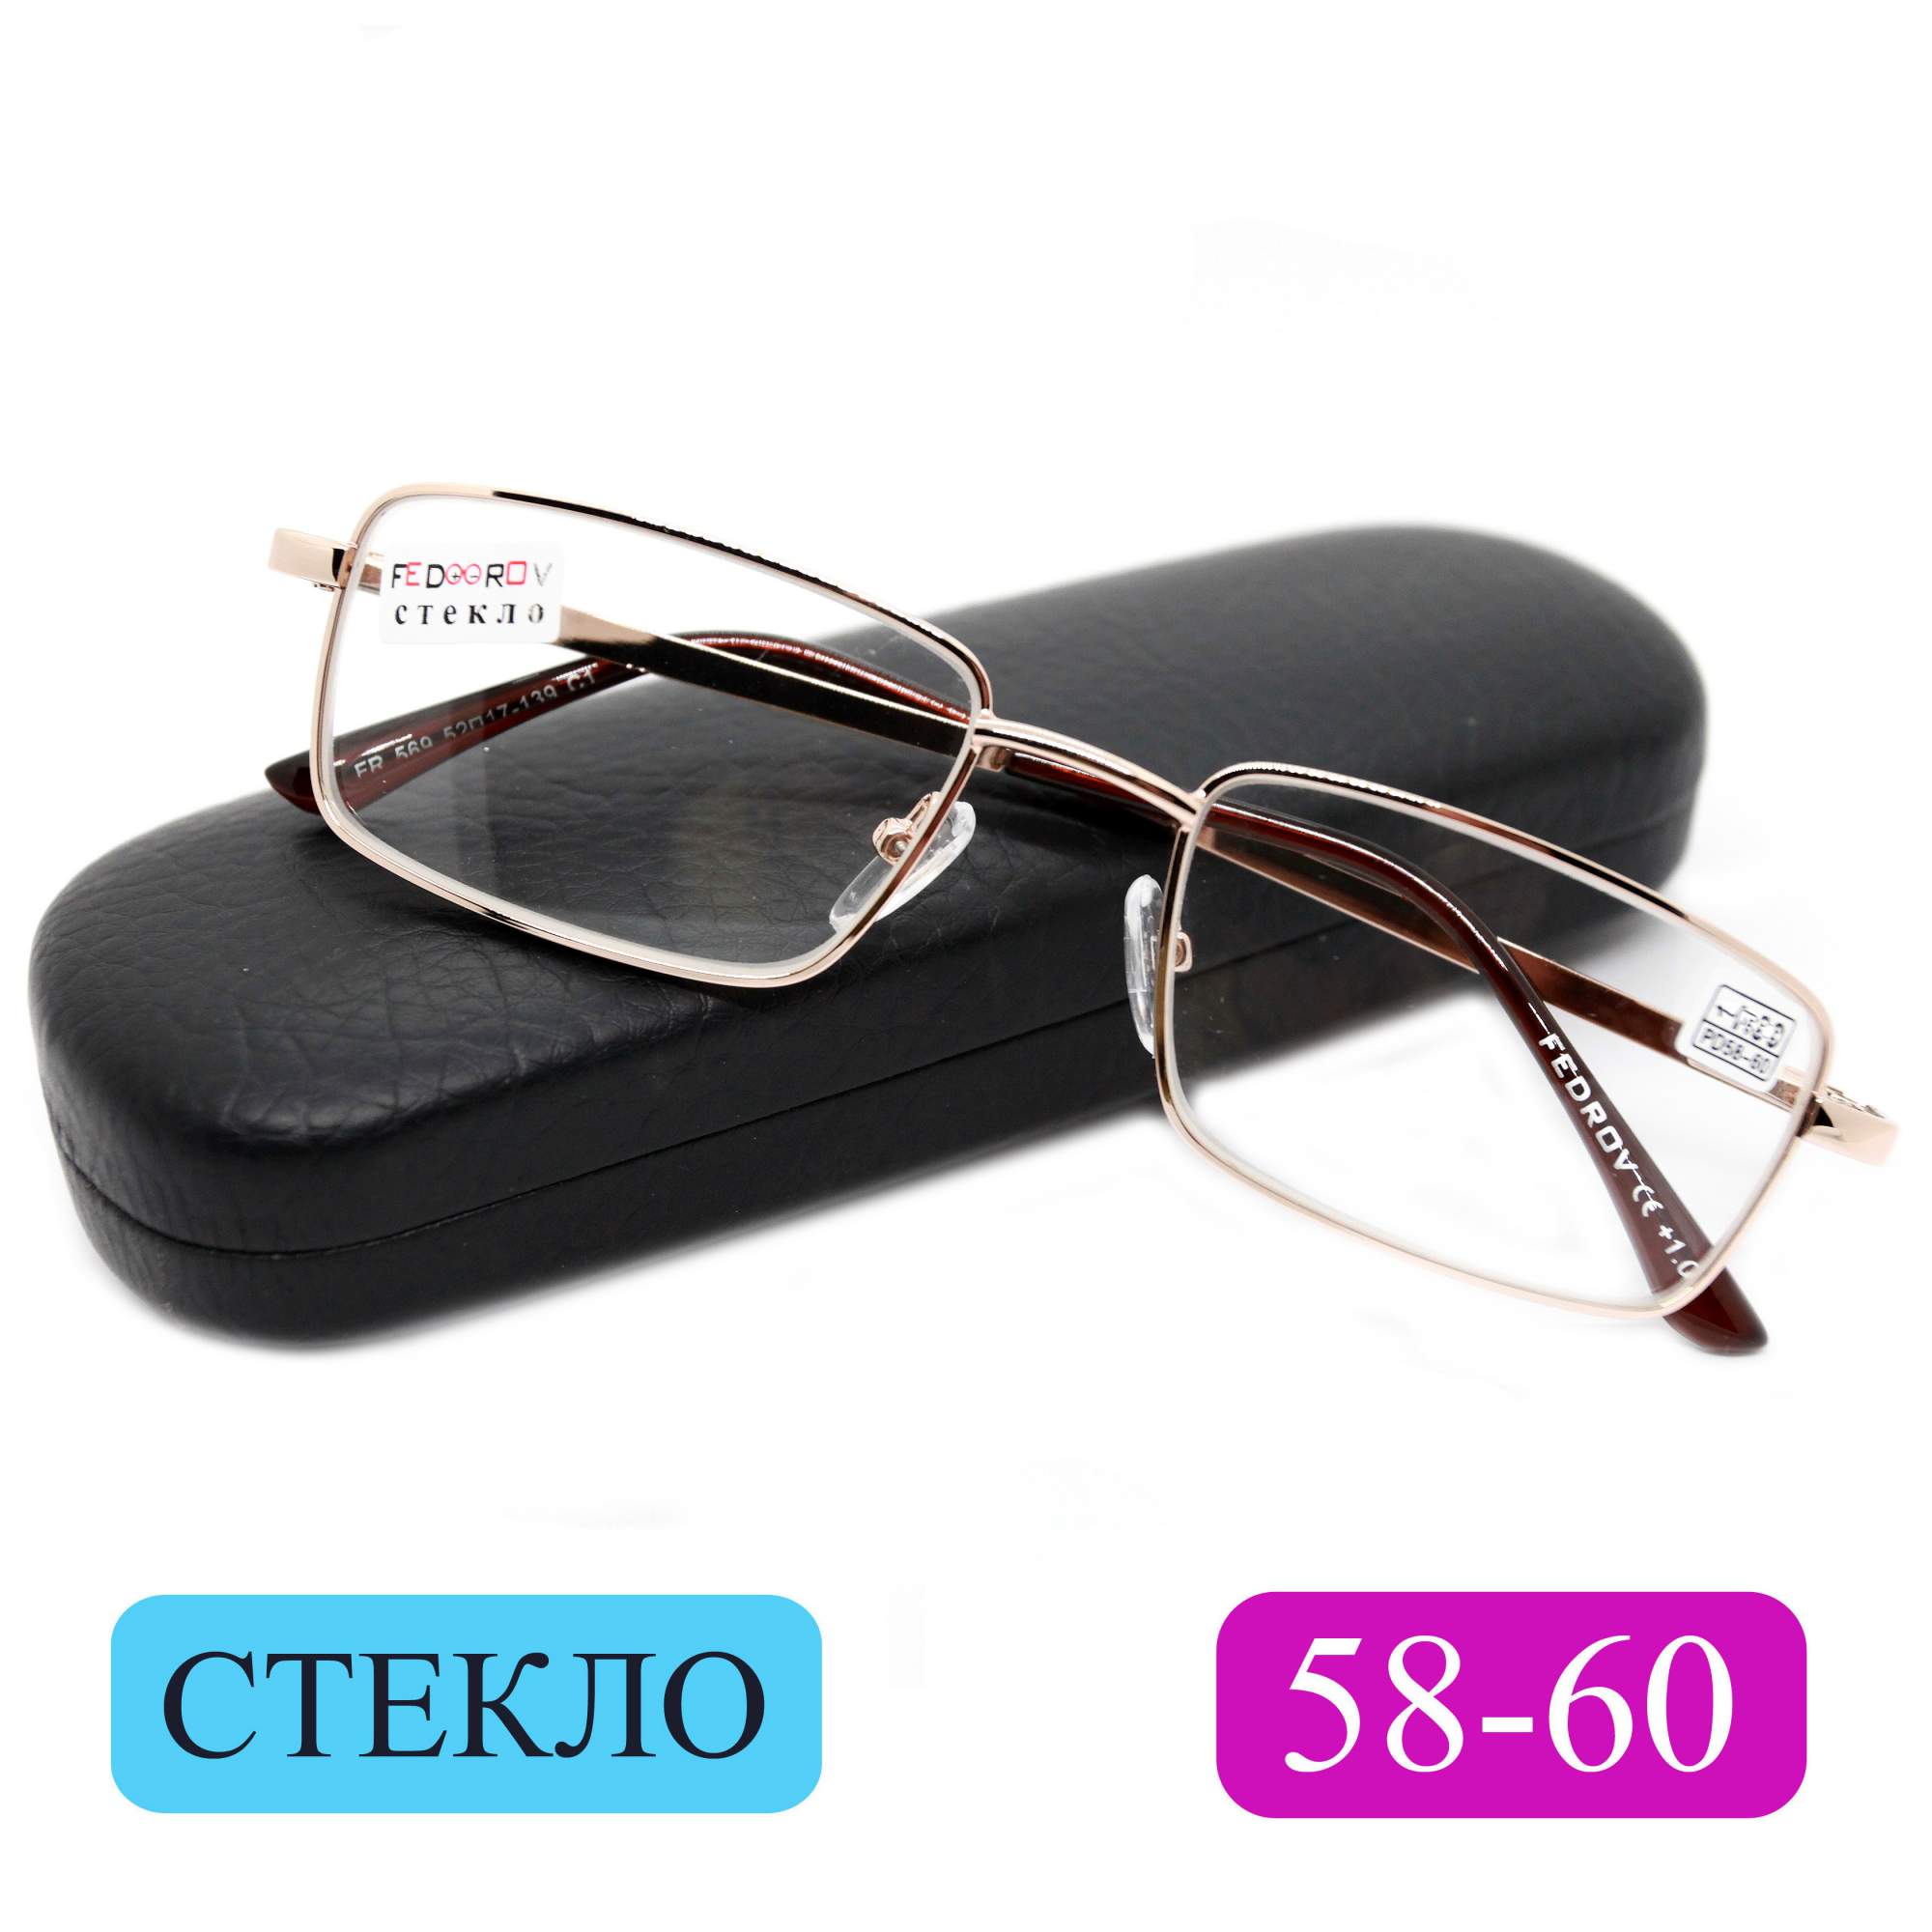 Готовые очки Fedrov 569, со стеклянной линзой, +1,00, c футляром, золотые, РЦ 58-60